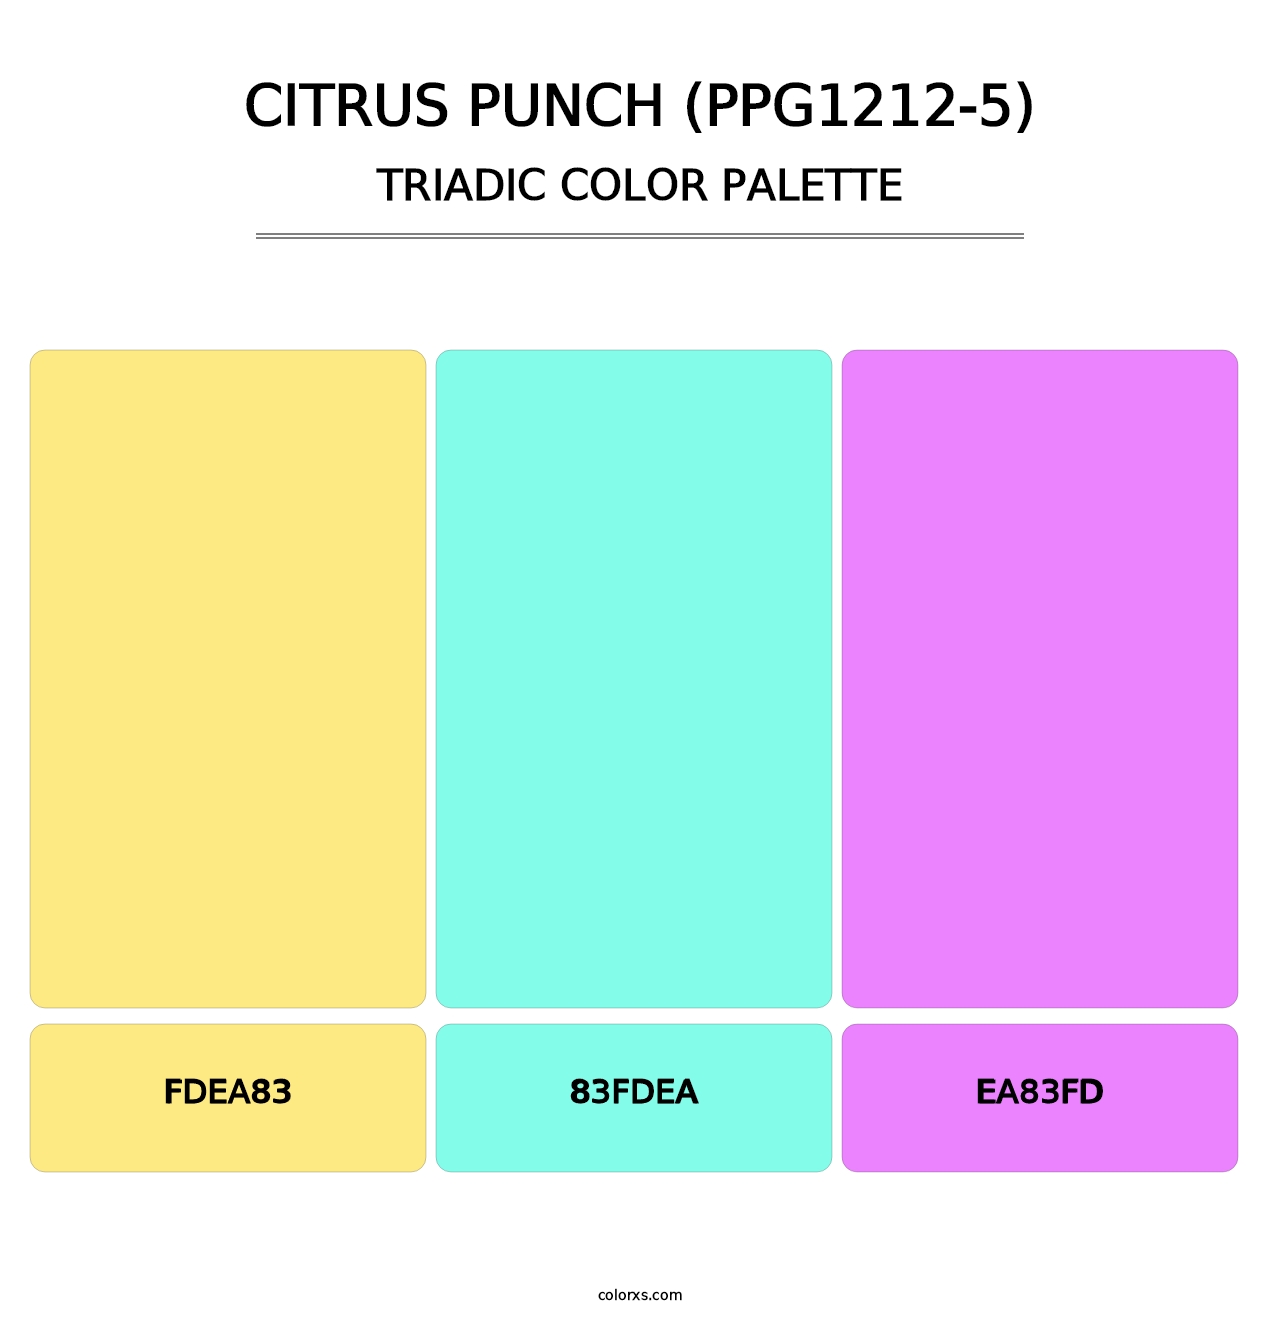 Citrus Punch (PPG1212-5) - Triadic Color Palette